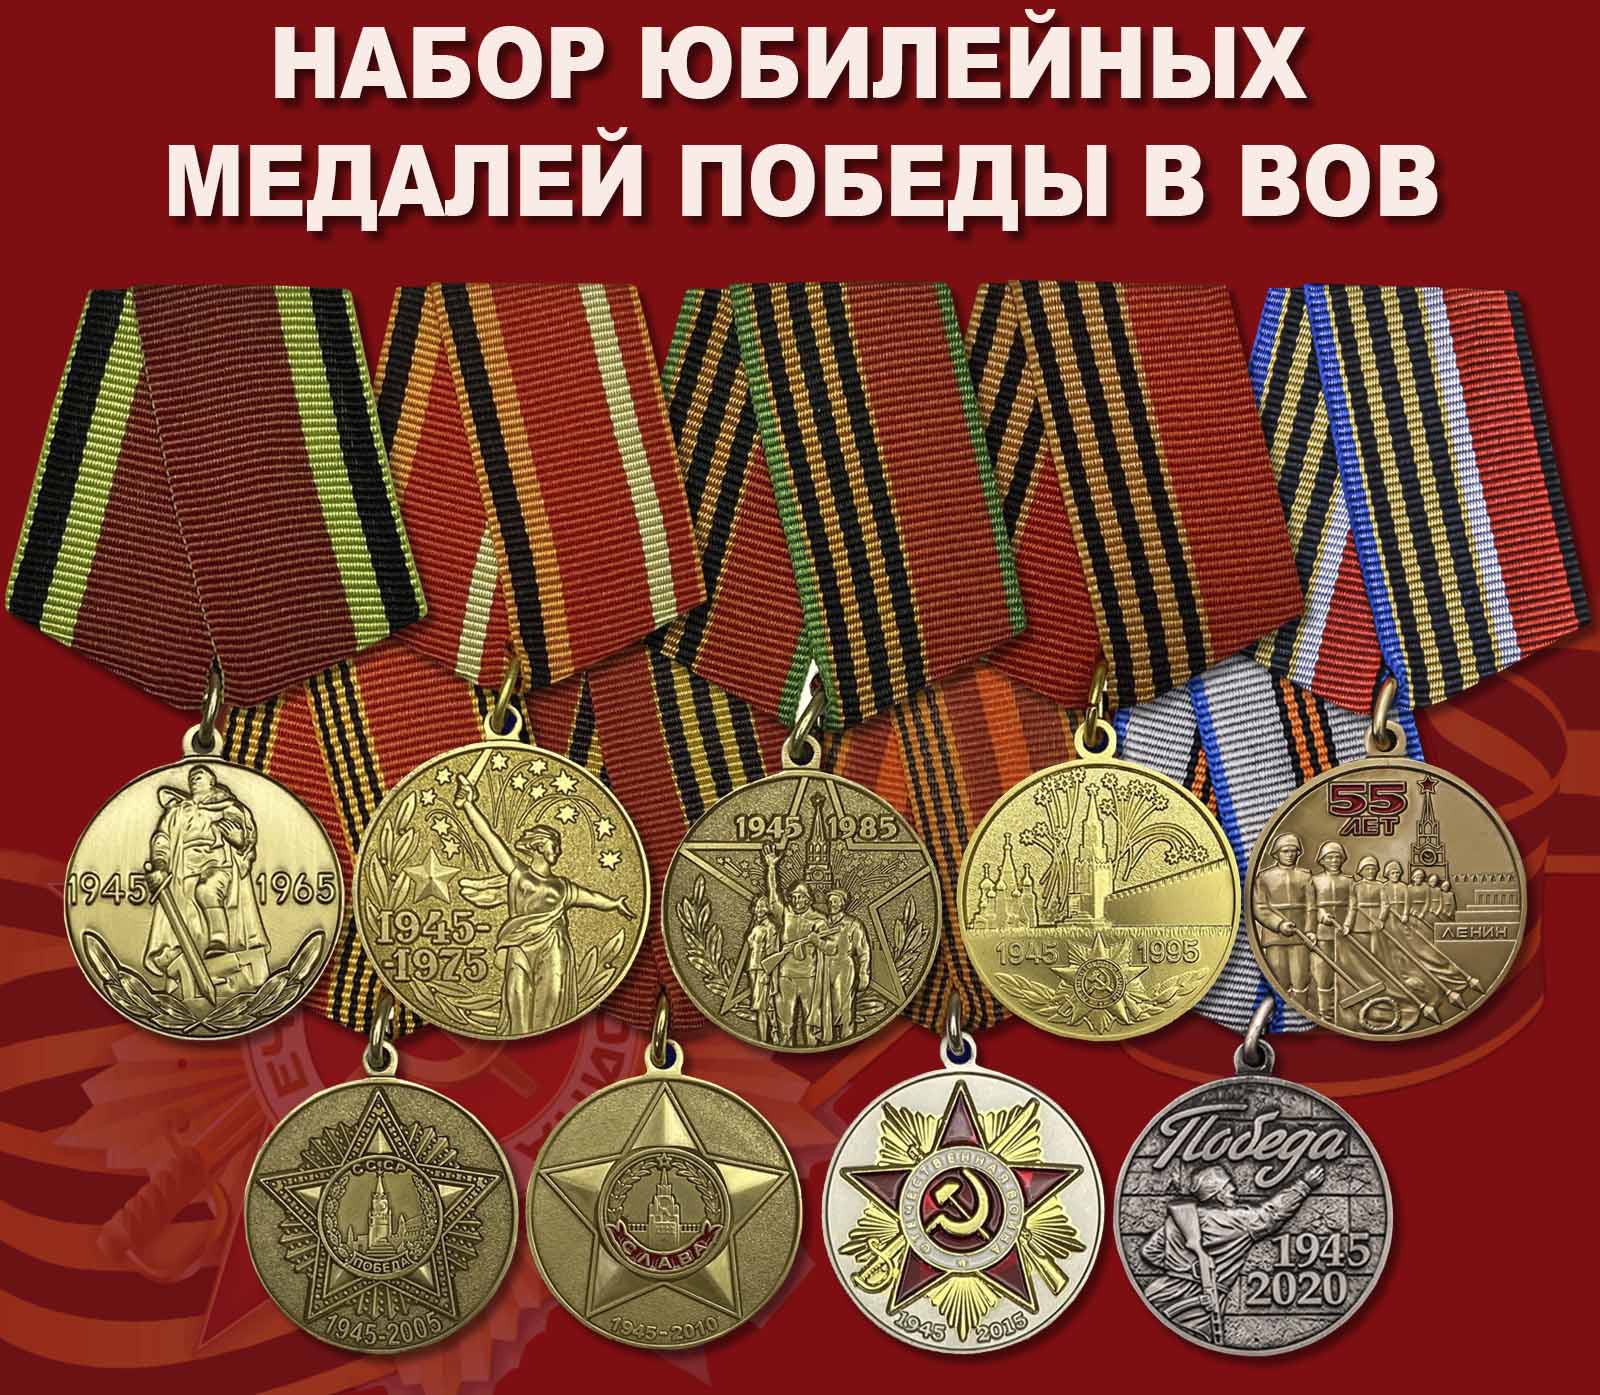 Купить набор юбилейных медалей Победы в ВОВ